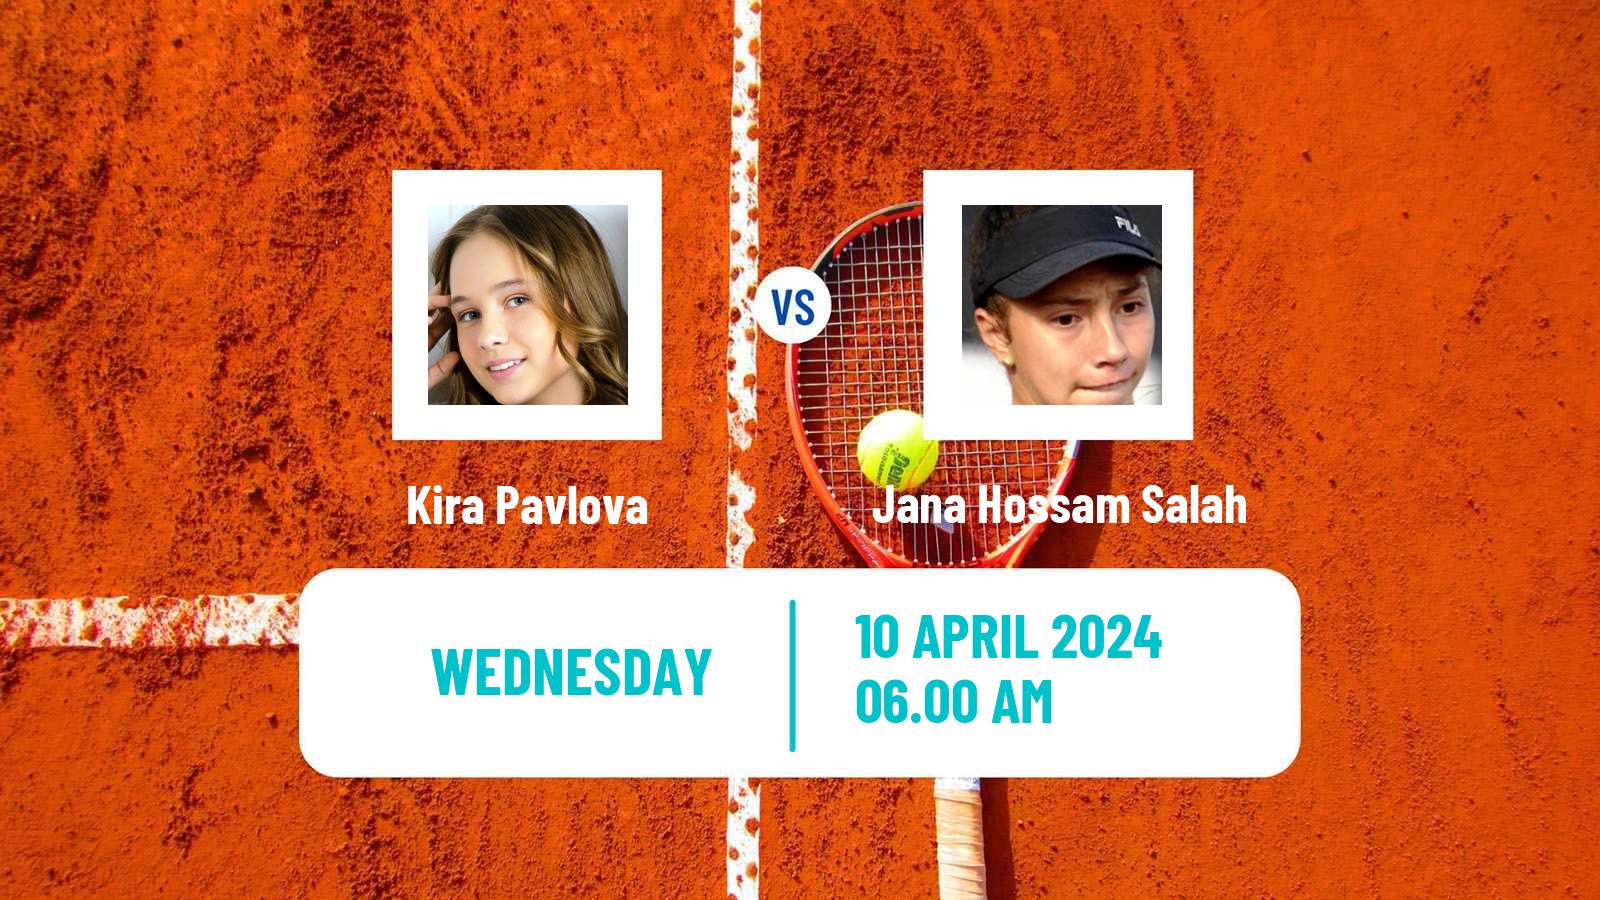 Tennis ITF W35 Sharm Elsheikh 2 Women Kira Pavlova - Jana Hossam Salah